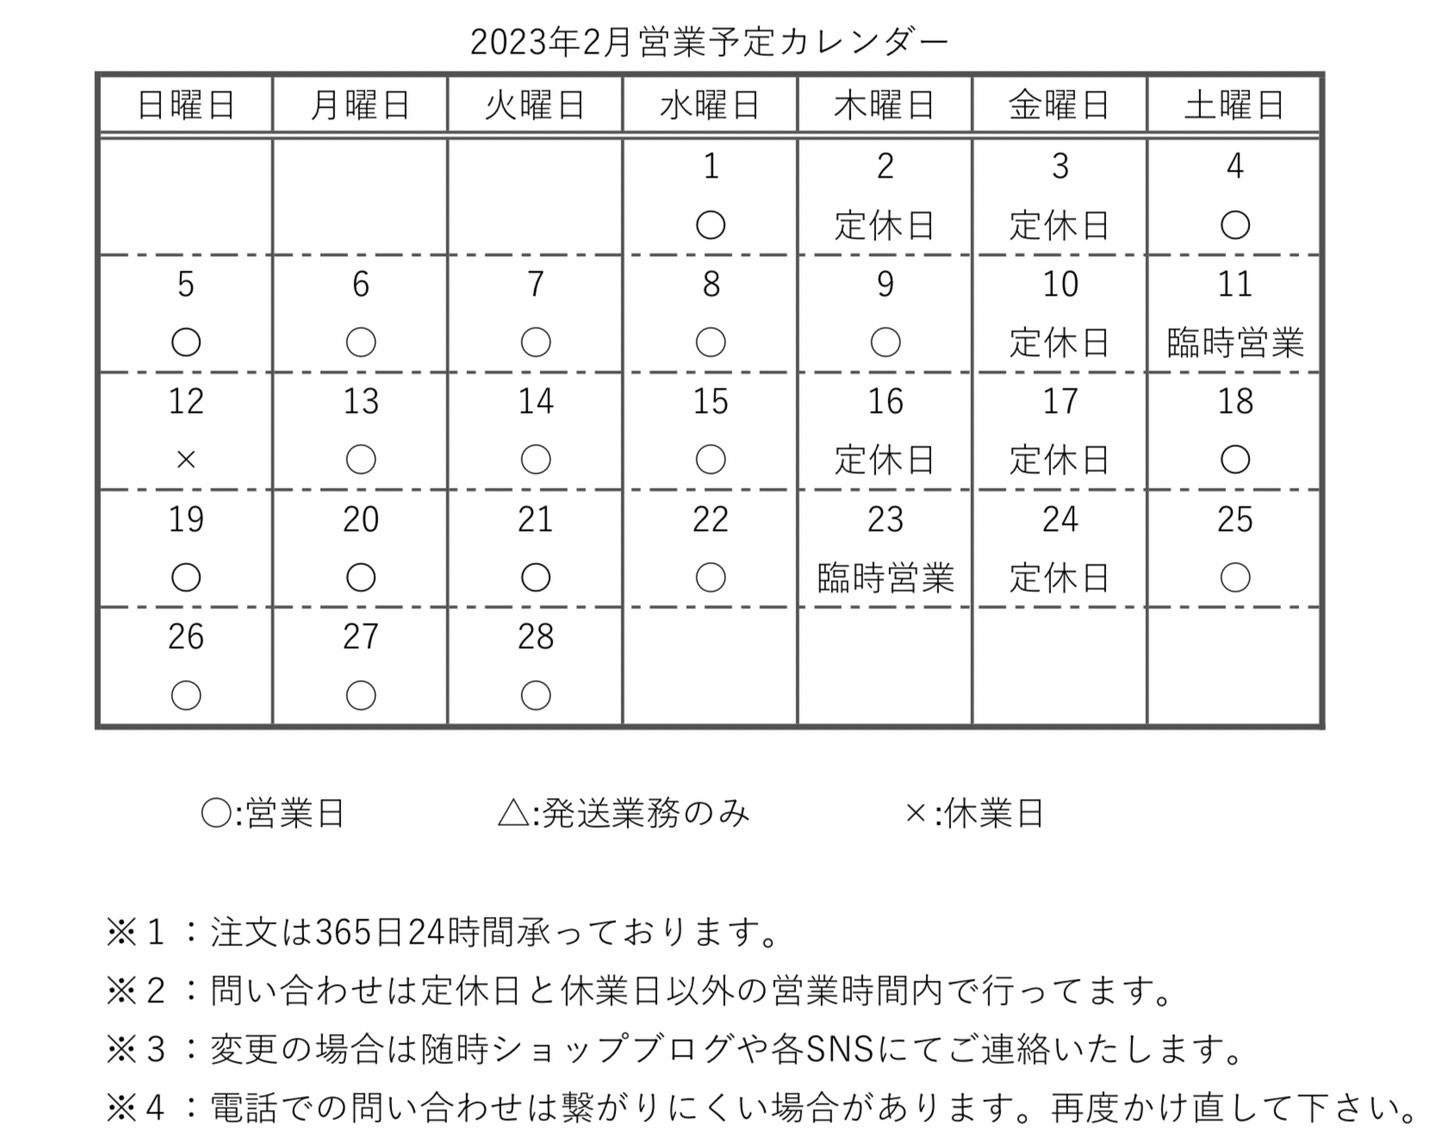 【カレンダー】2023年2月営業予定カレンダー